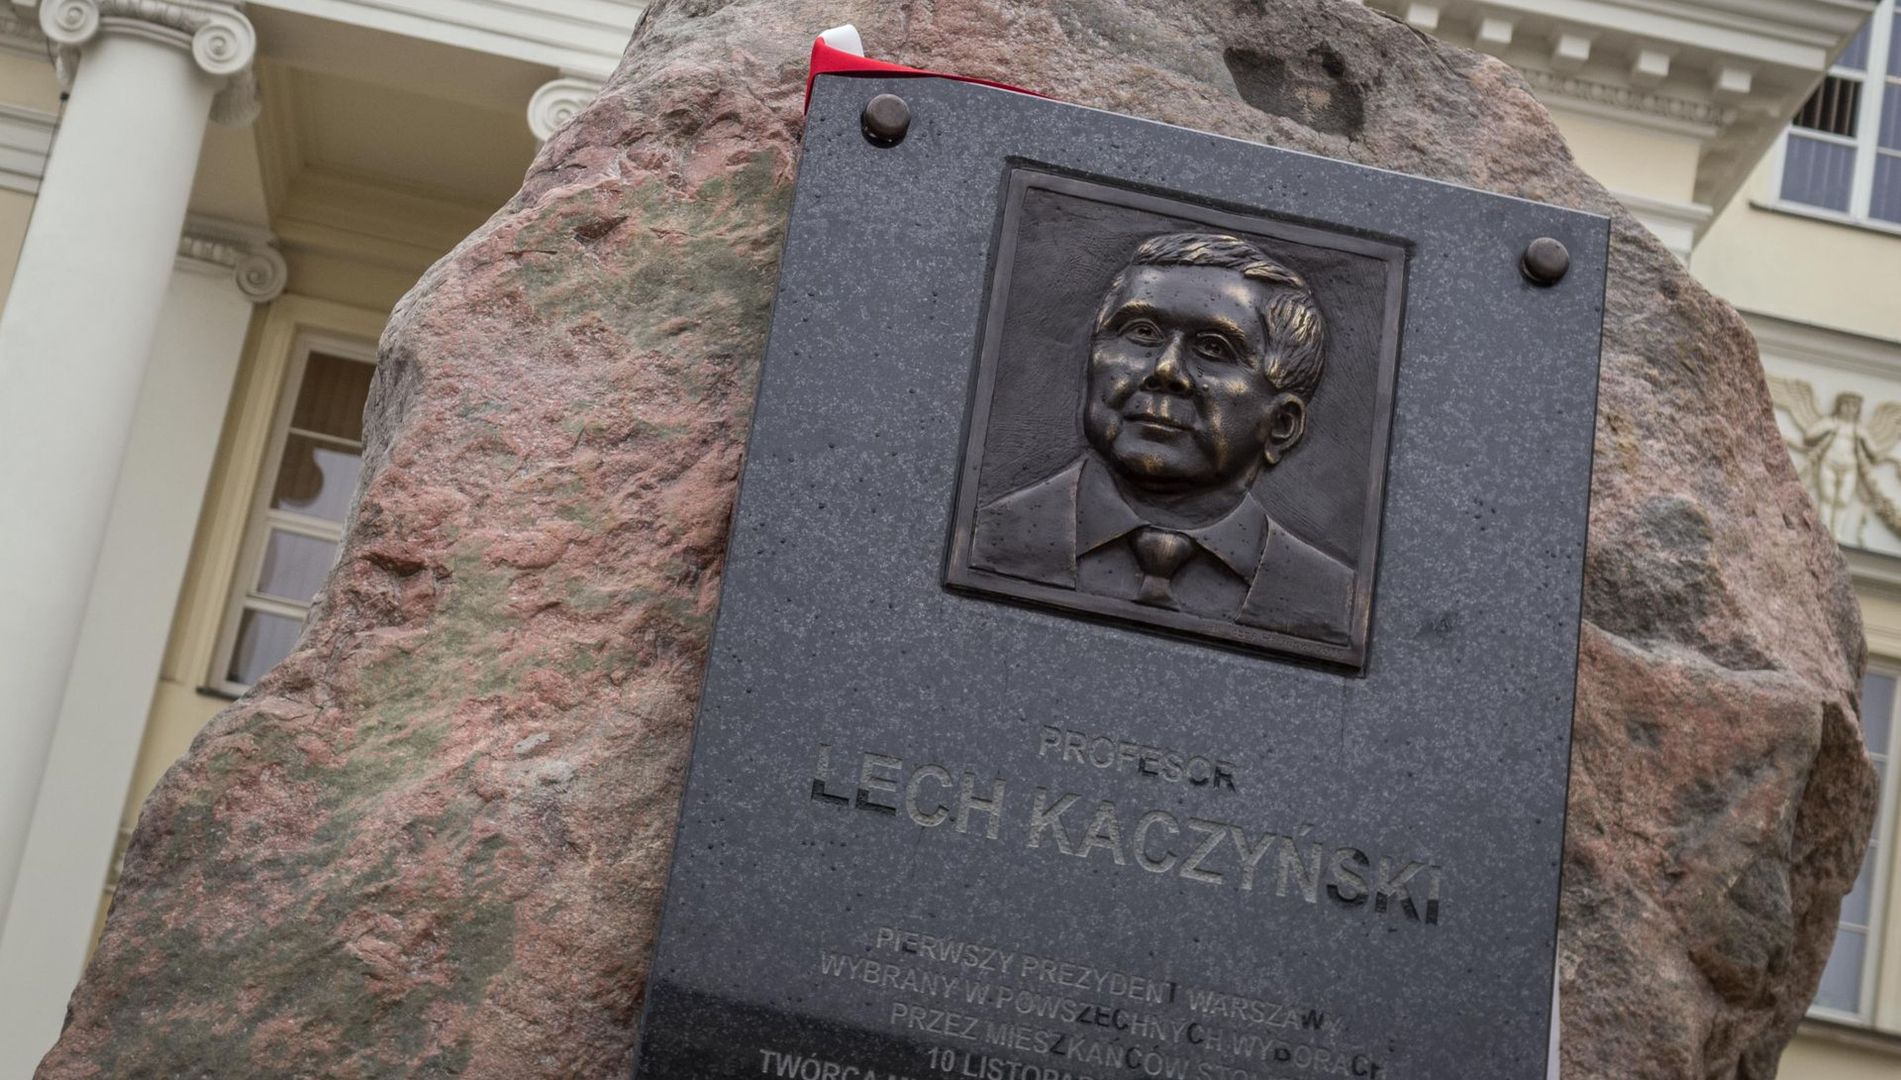 Tablica pamiątkowa z Lechem Kaczyńskim zostanie usunięta?